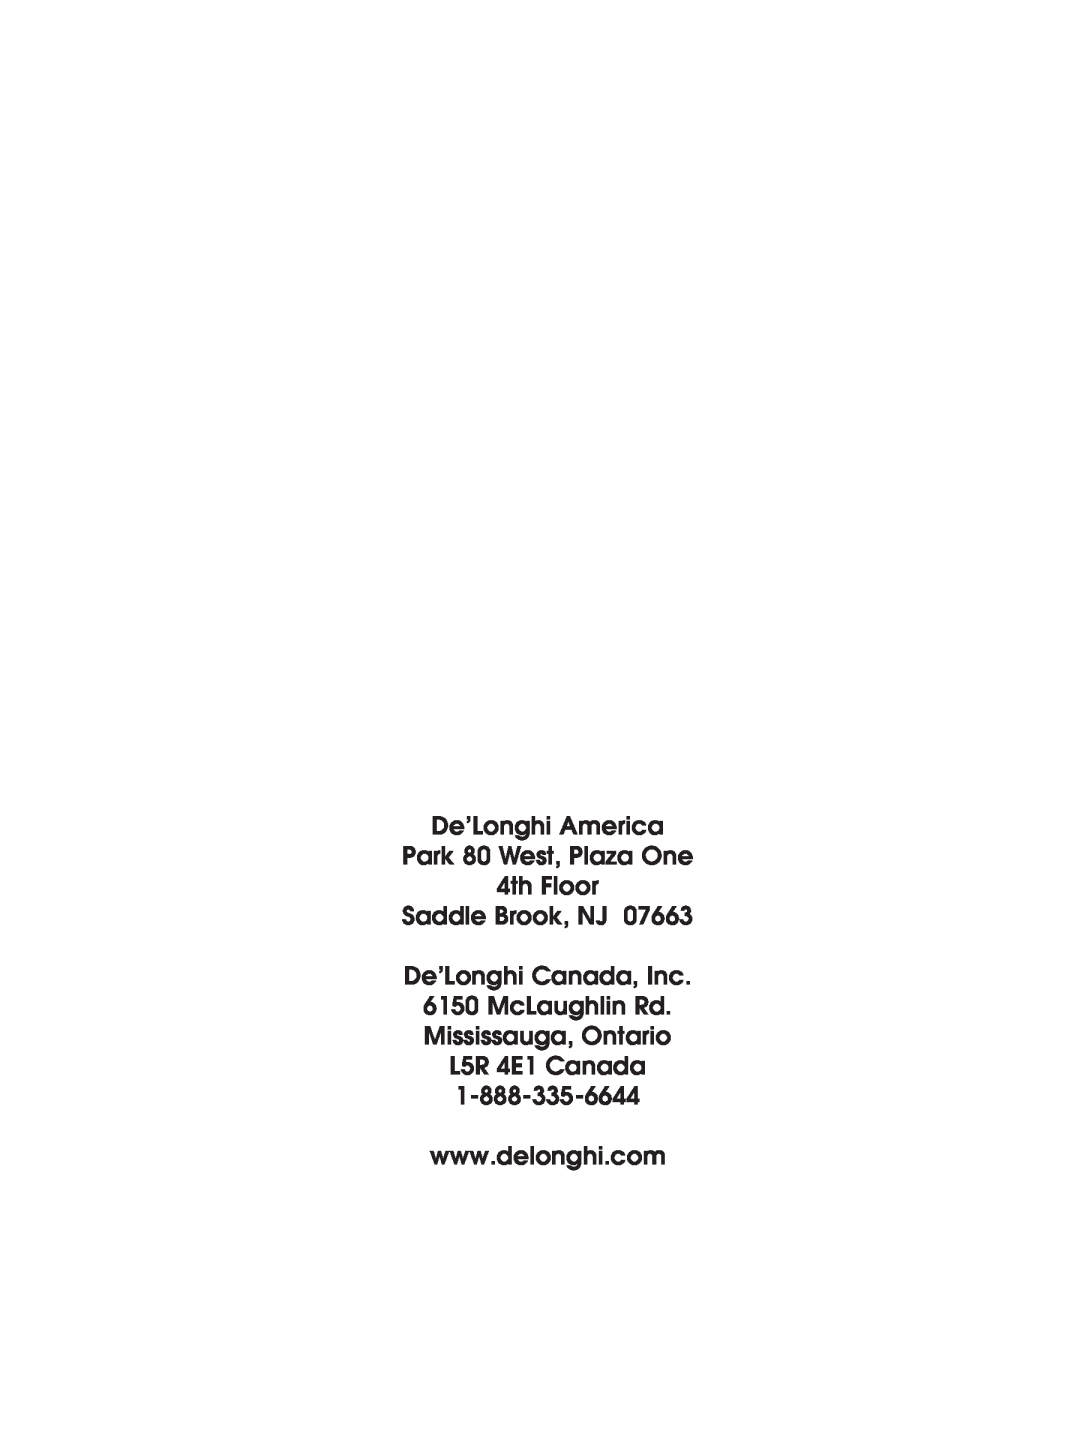 DeLonghi EAM4000 De’Longhi America Park 80 West, Plaza One, 4th Floor Saddle Brook, NJ De’Longhi Canada, Inc 